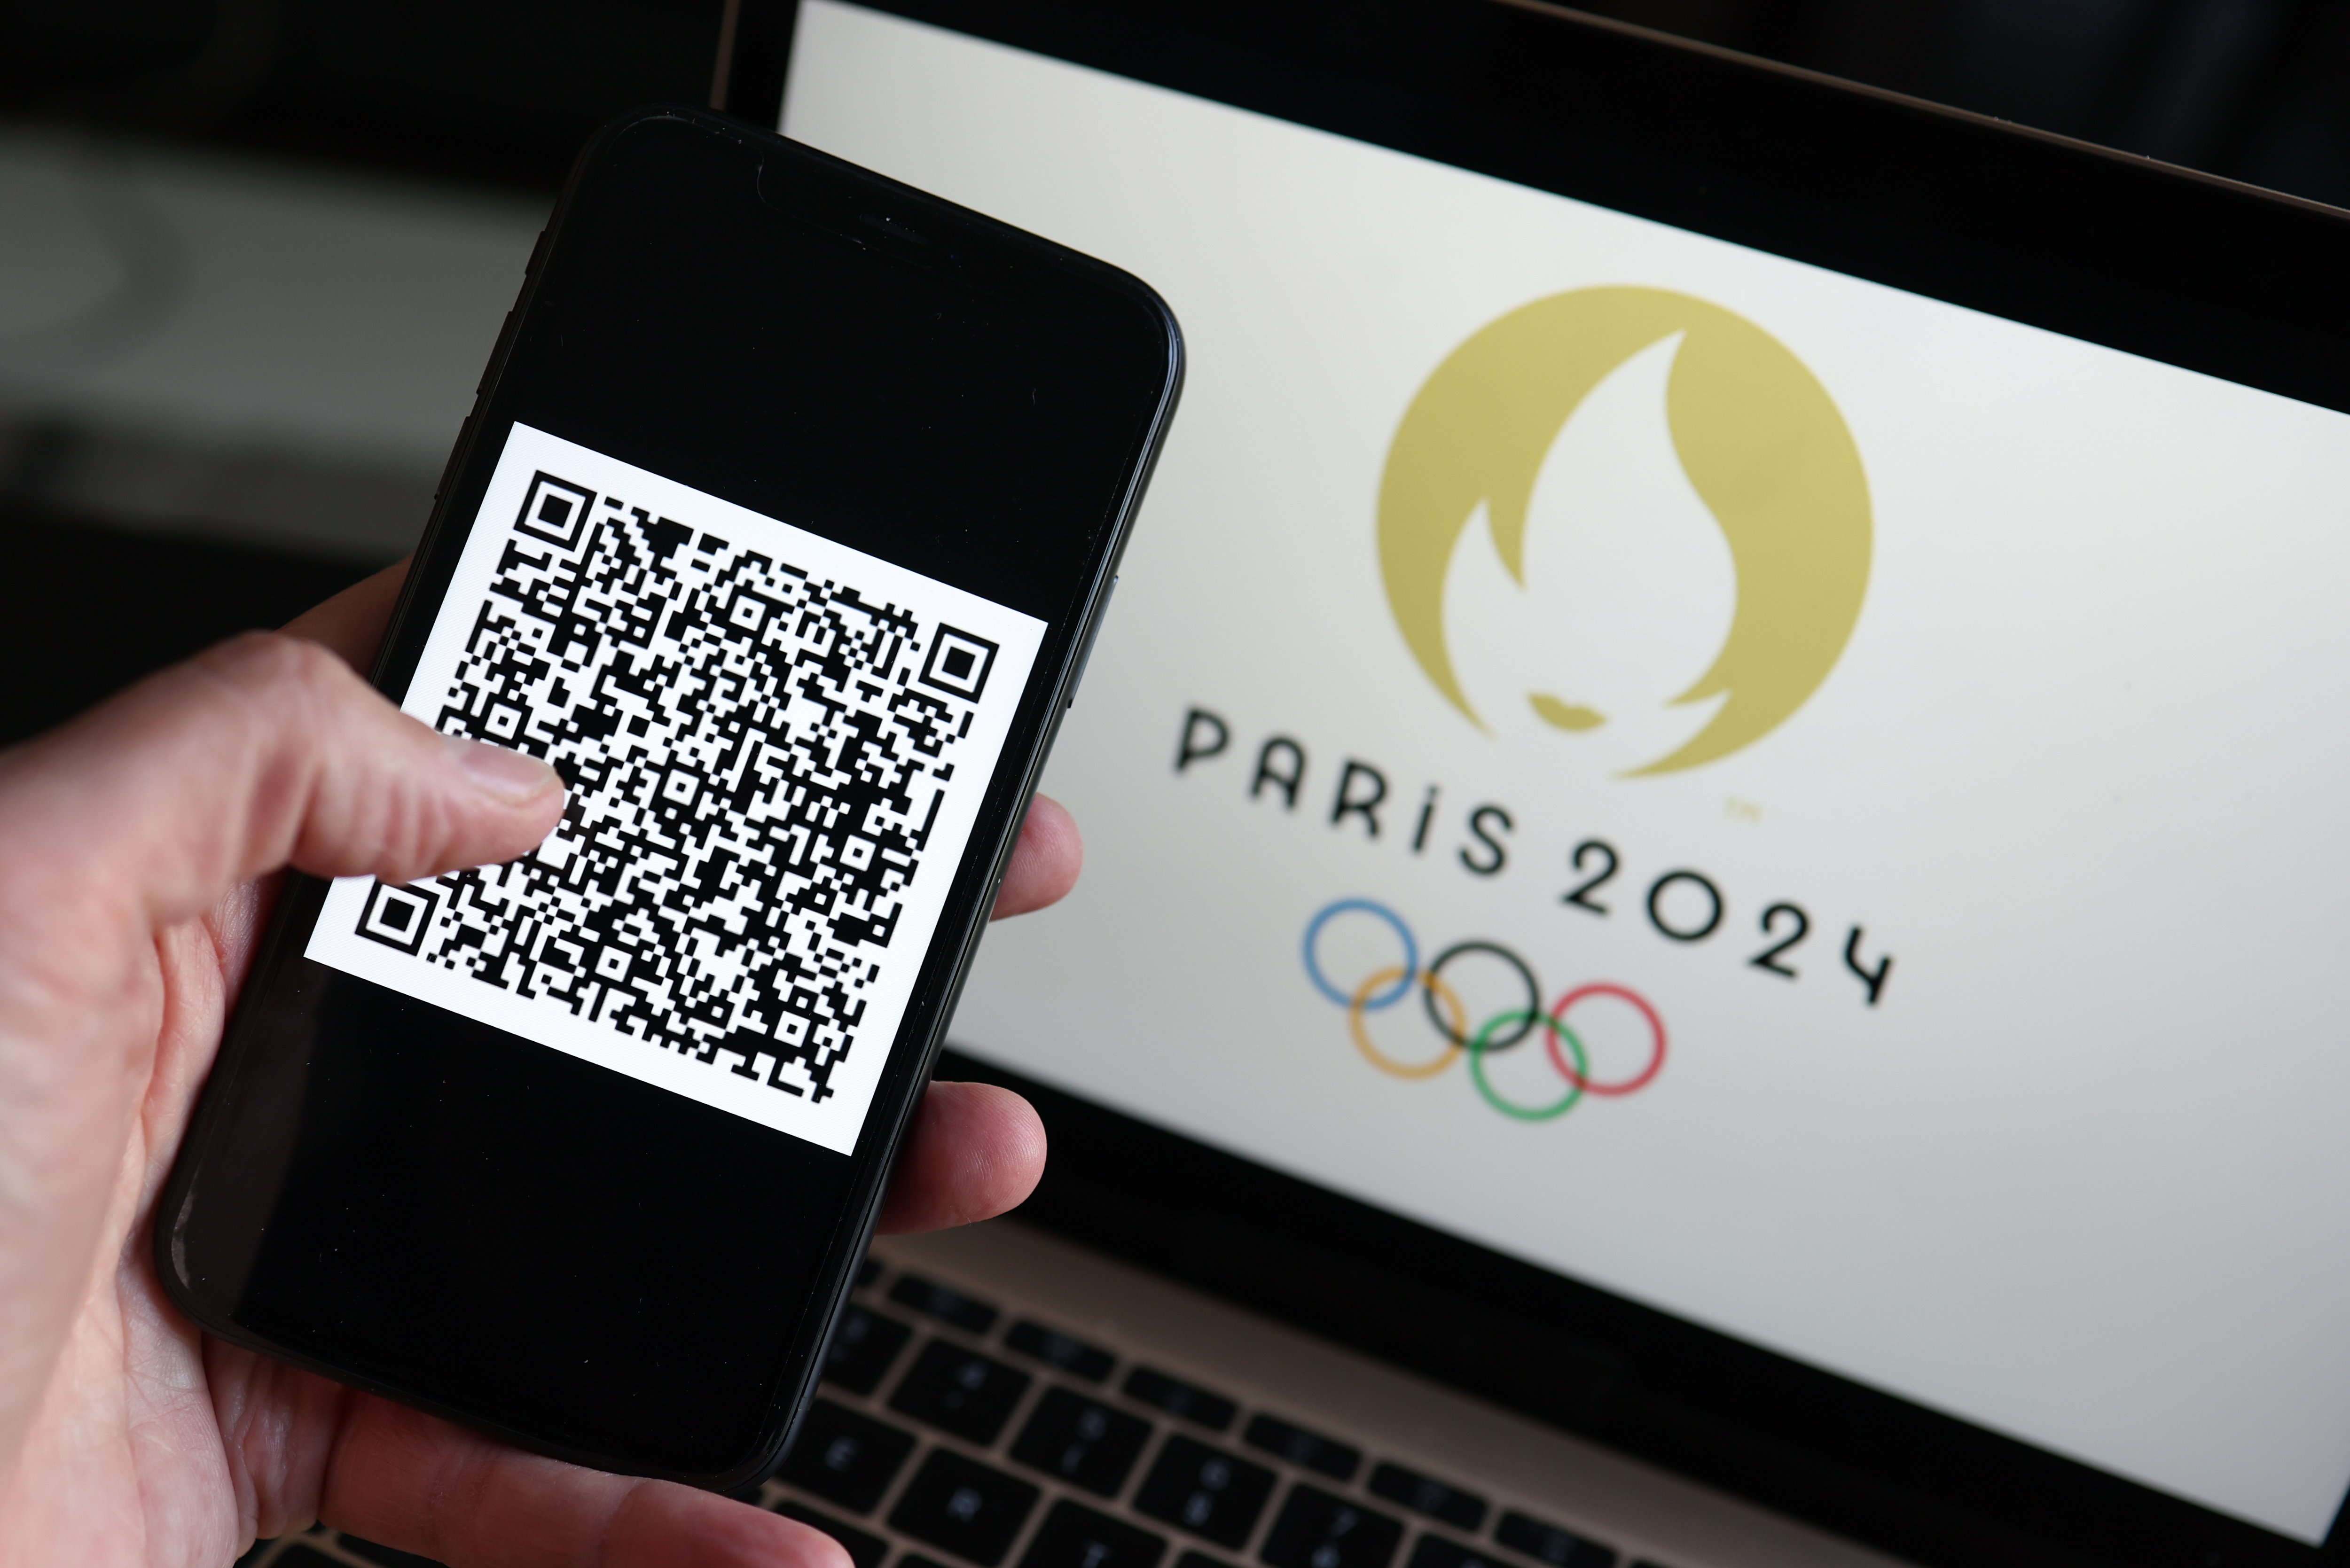 Un QR code sera nécessaire pour accéder aux périmètres sécurisés des Jeux olympiques de Paris 2024. (Illustration) Arnaud Journois/LP